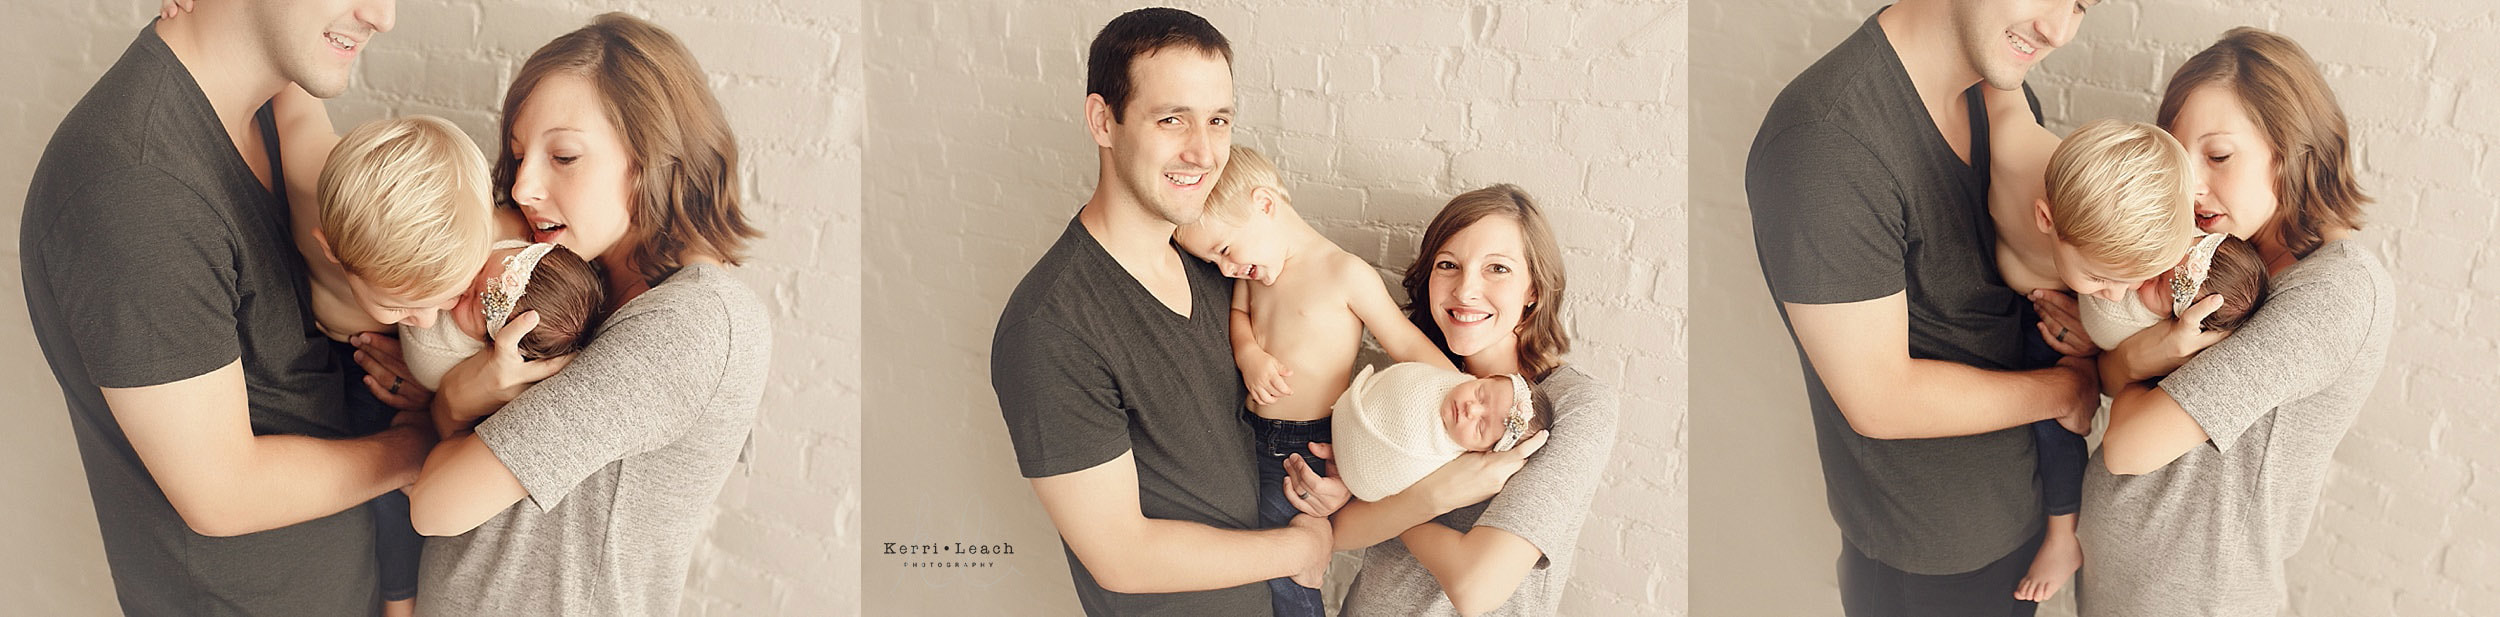 Newborn family posing | Newborn photographer Evansville, IN | Family photographer Evansville, IN 